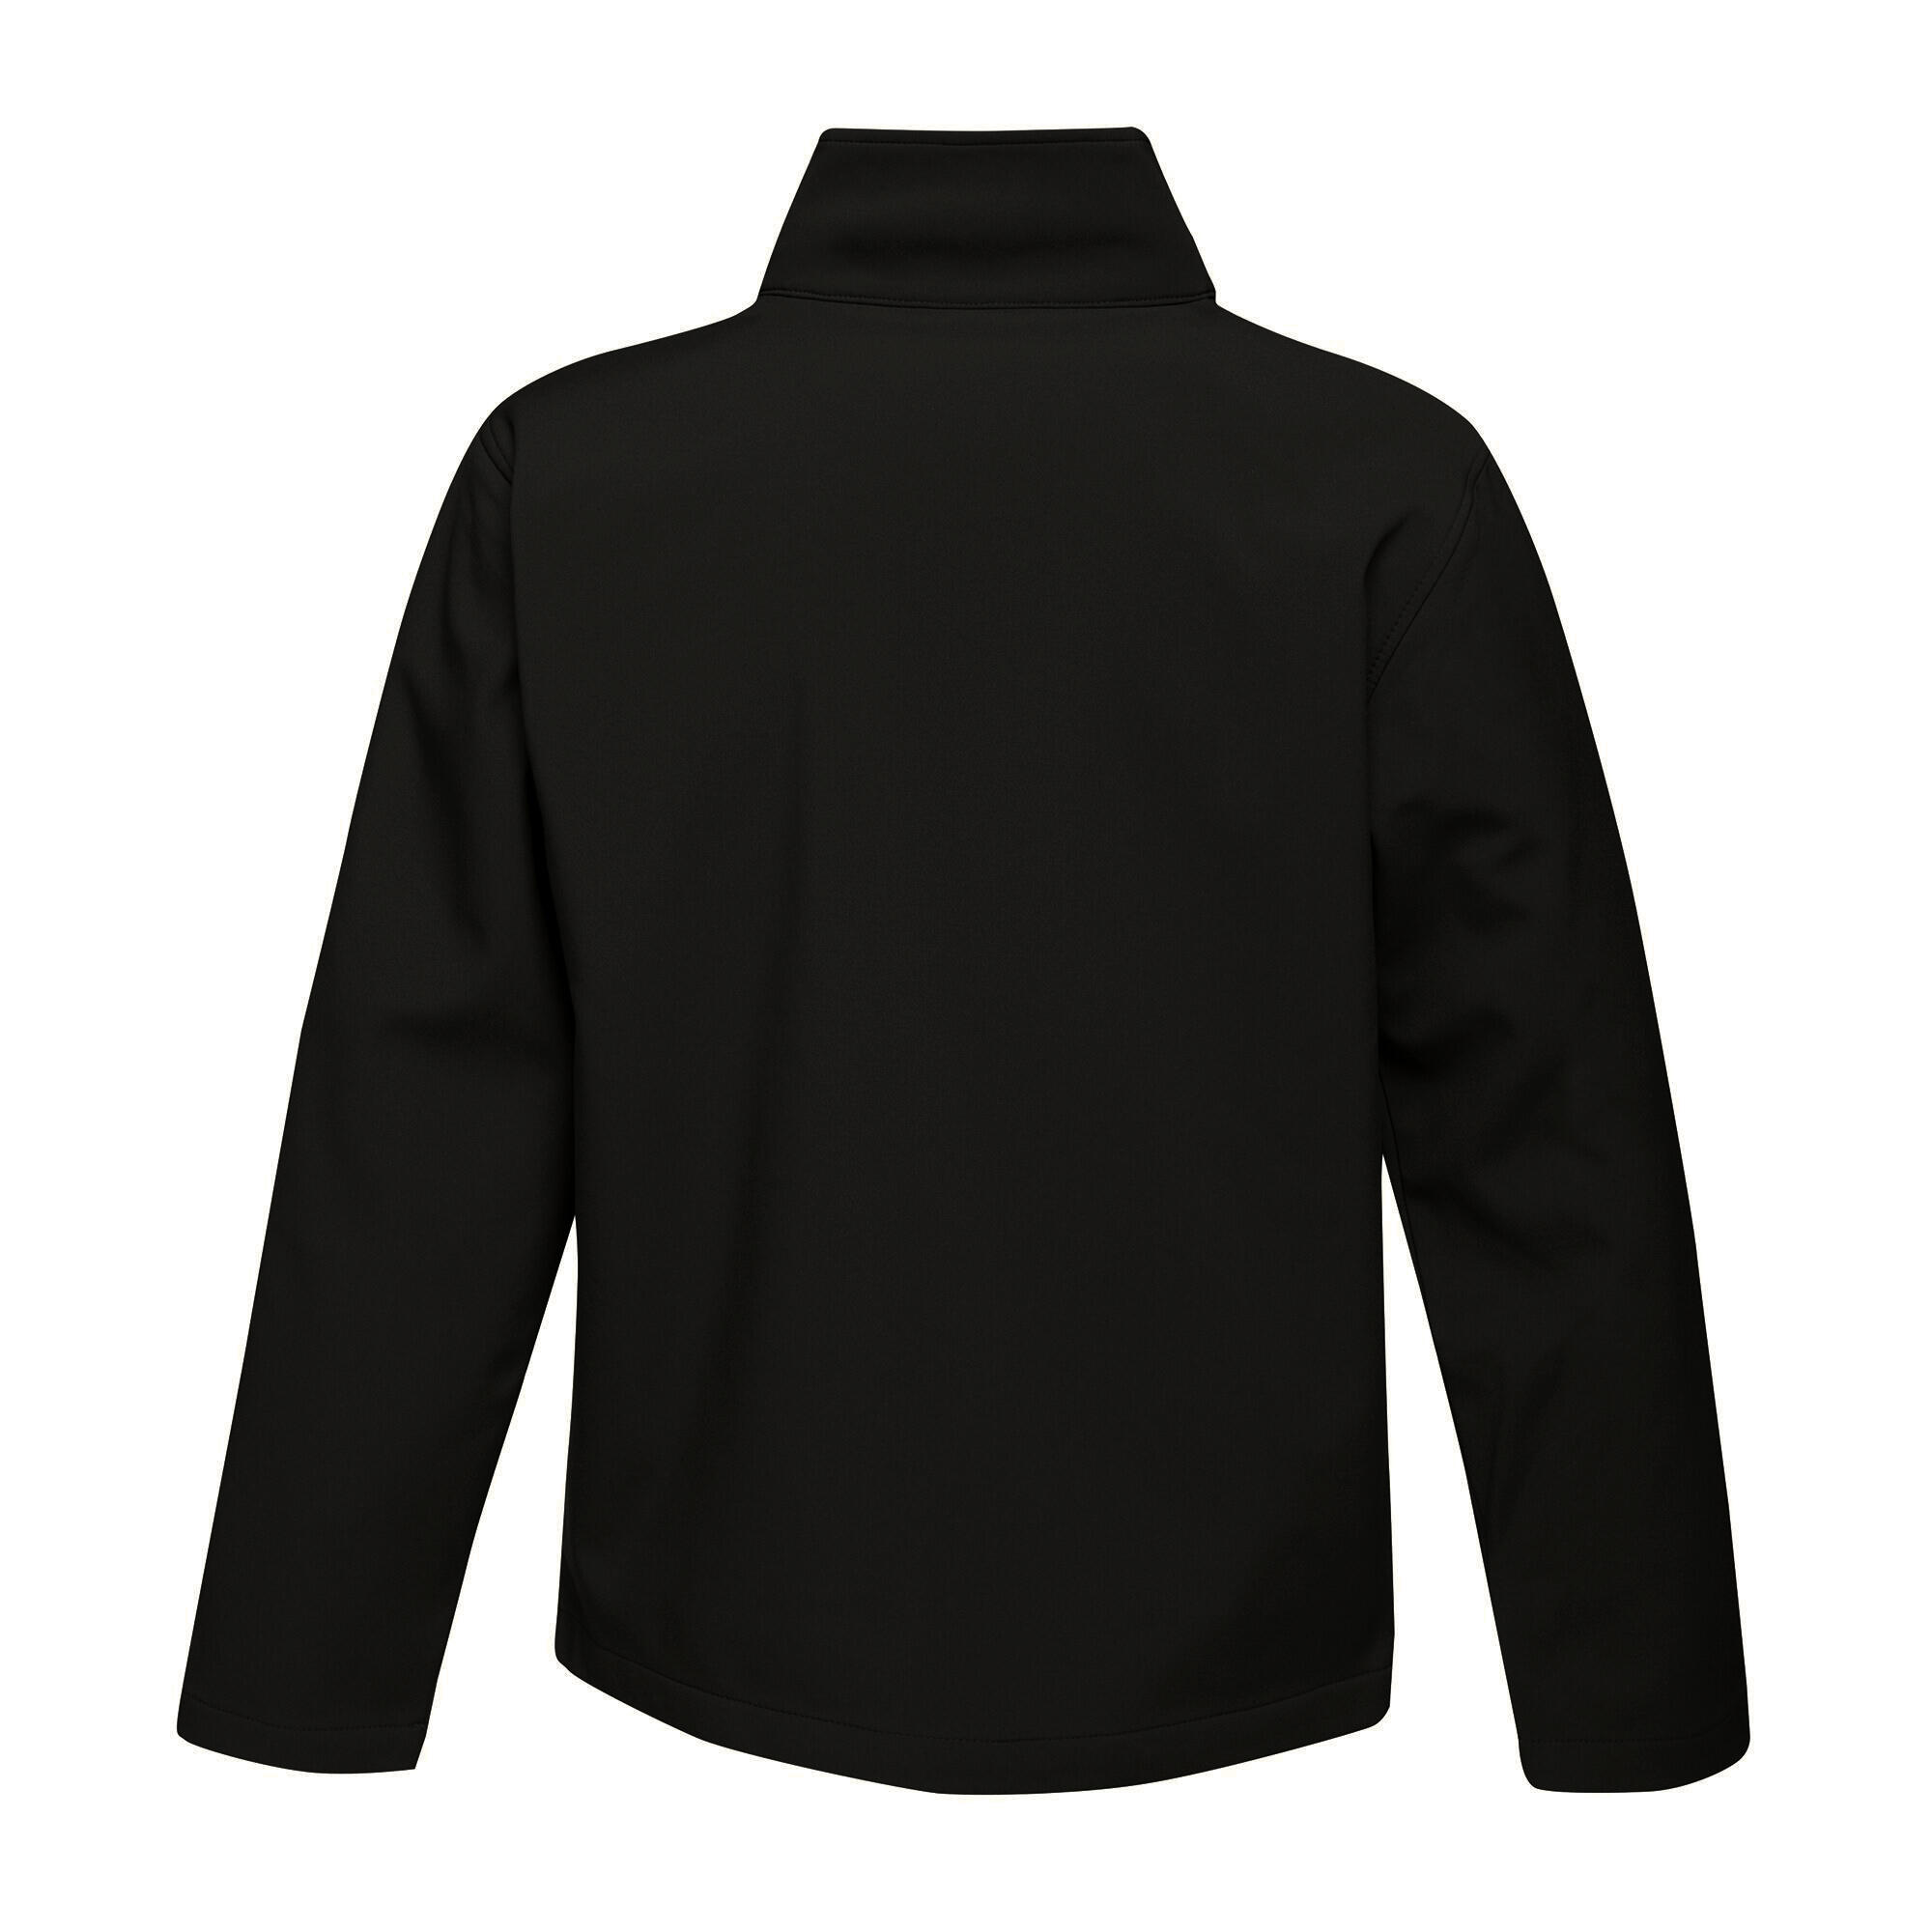 Mens Ablaze Printable Softshell Jacket (Black/Classic Red) 2/5